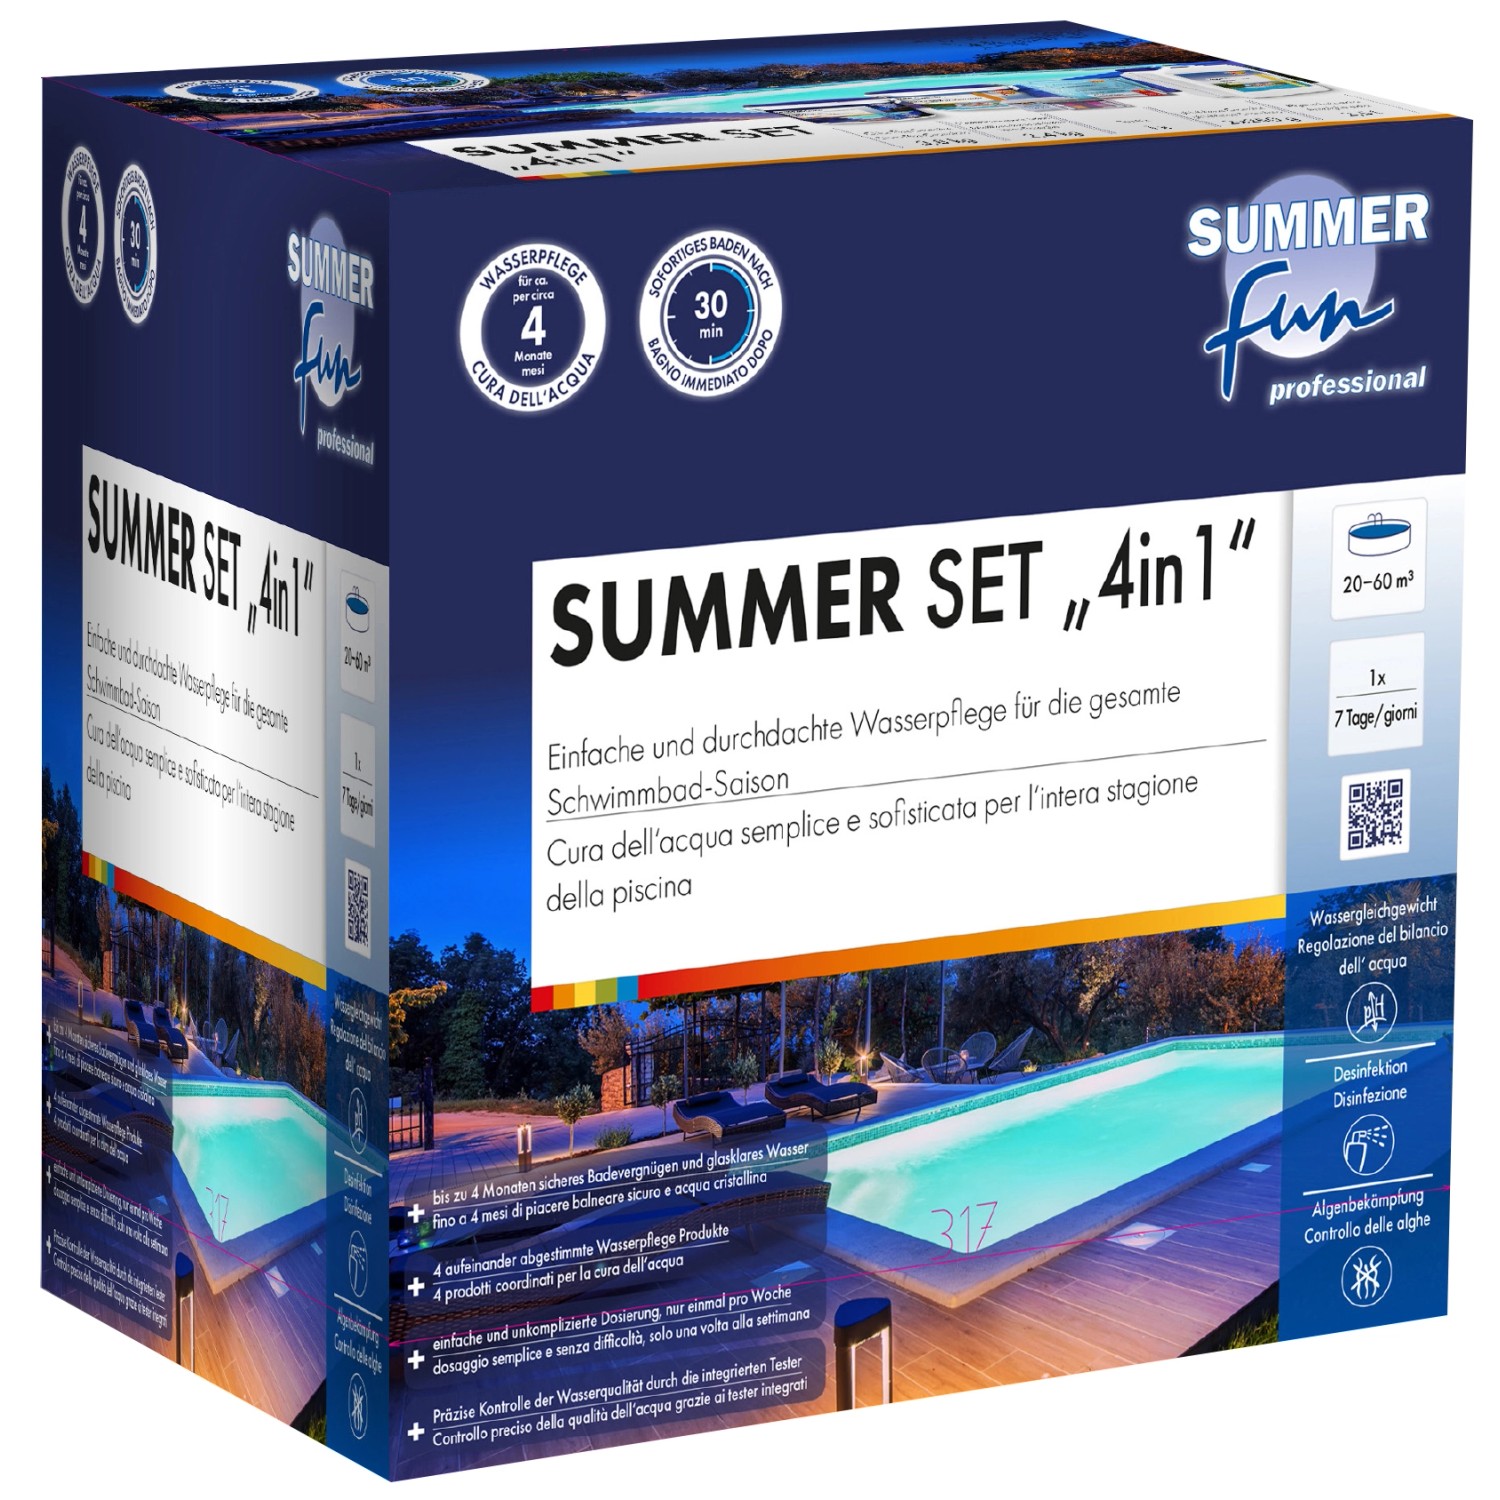 Summer Fun professional Summer Set 4 in 1 günstig online kaufen